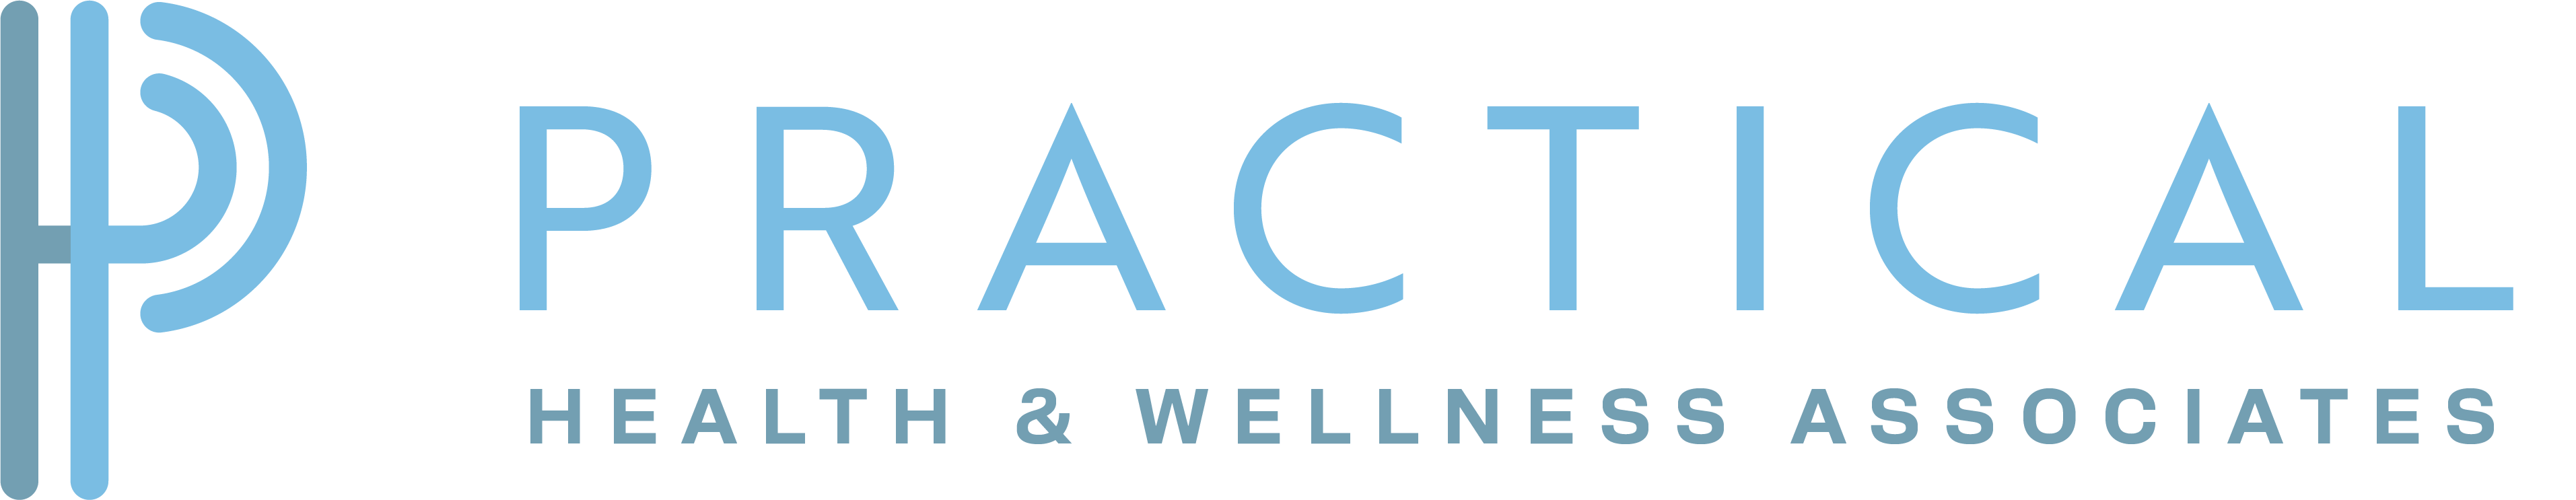 Practical Health & Wellness Associates